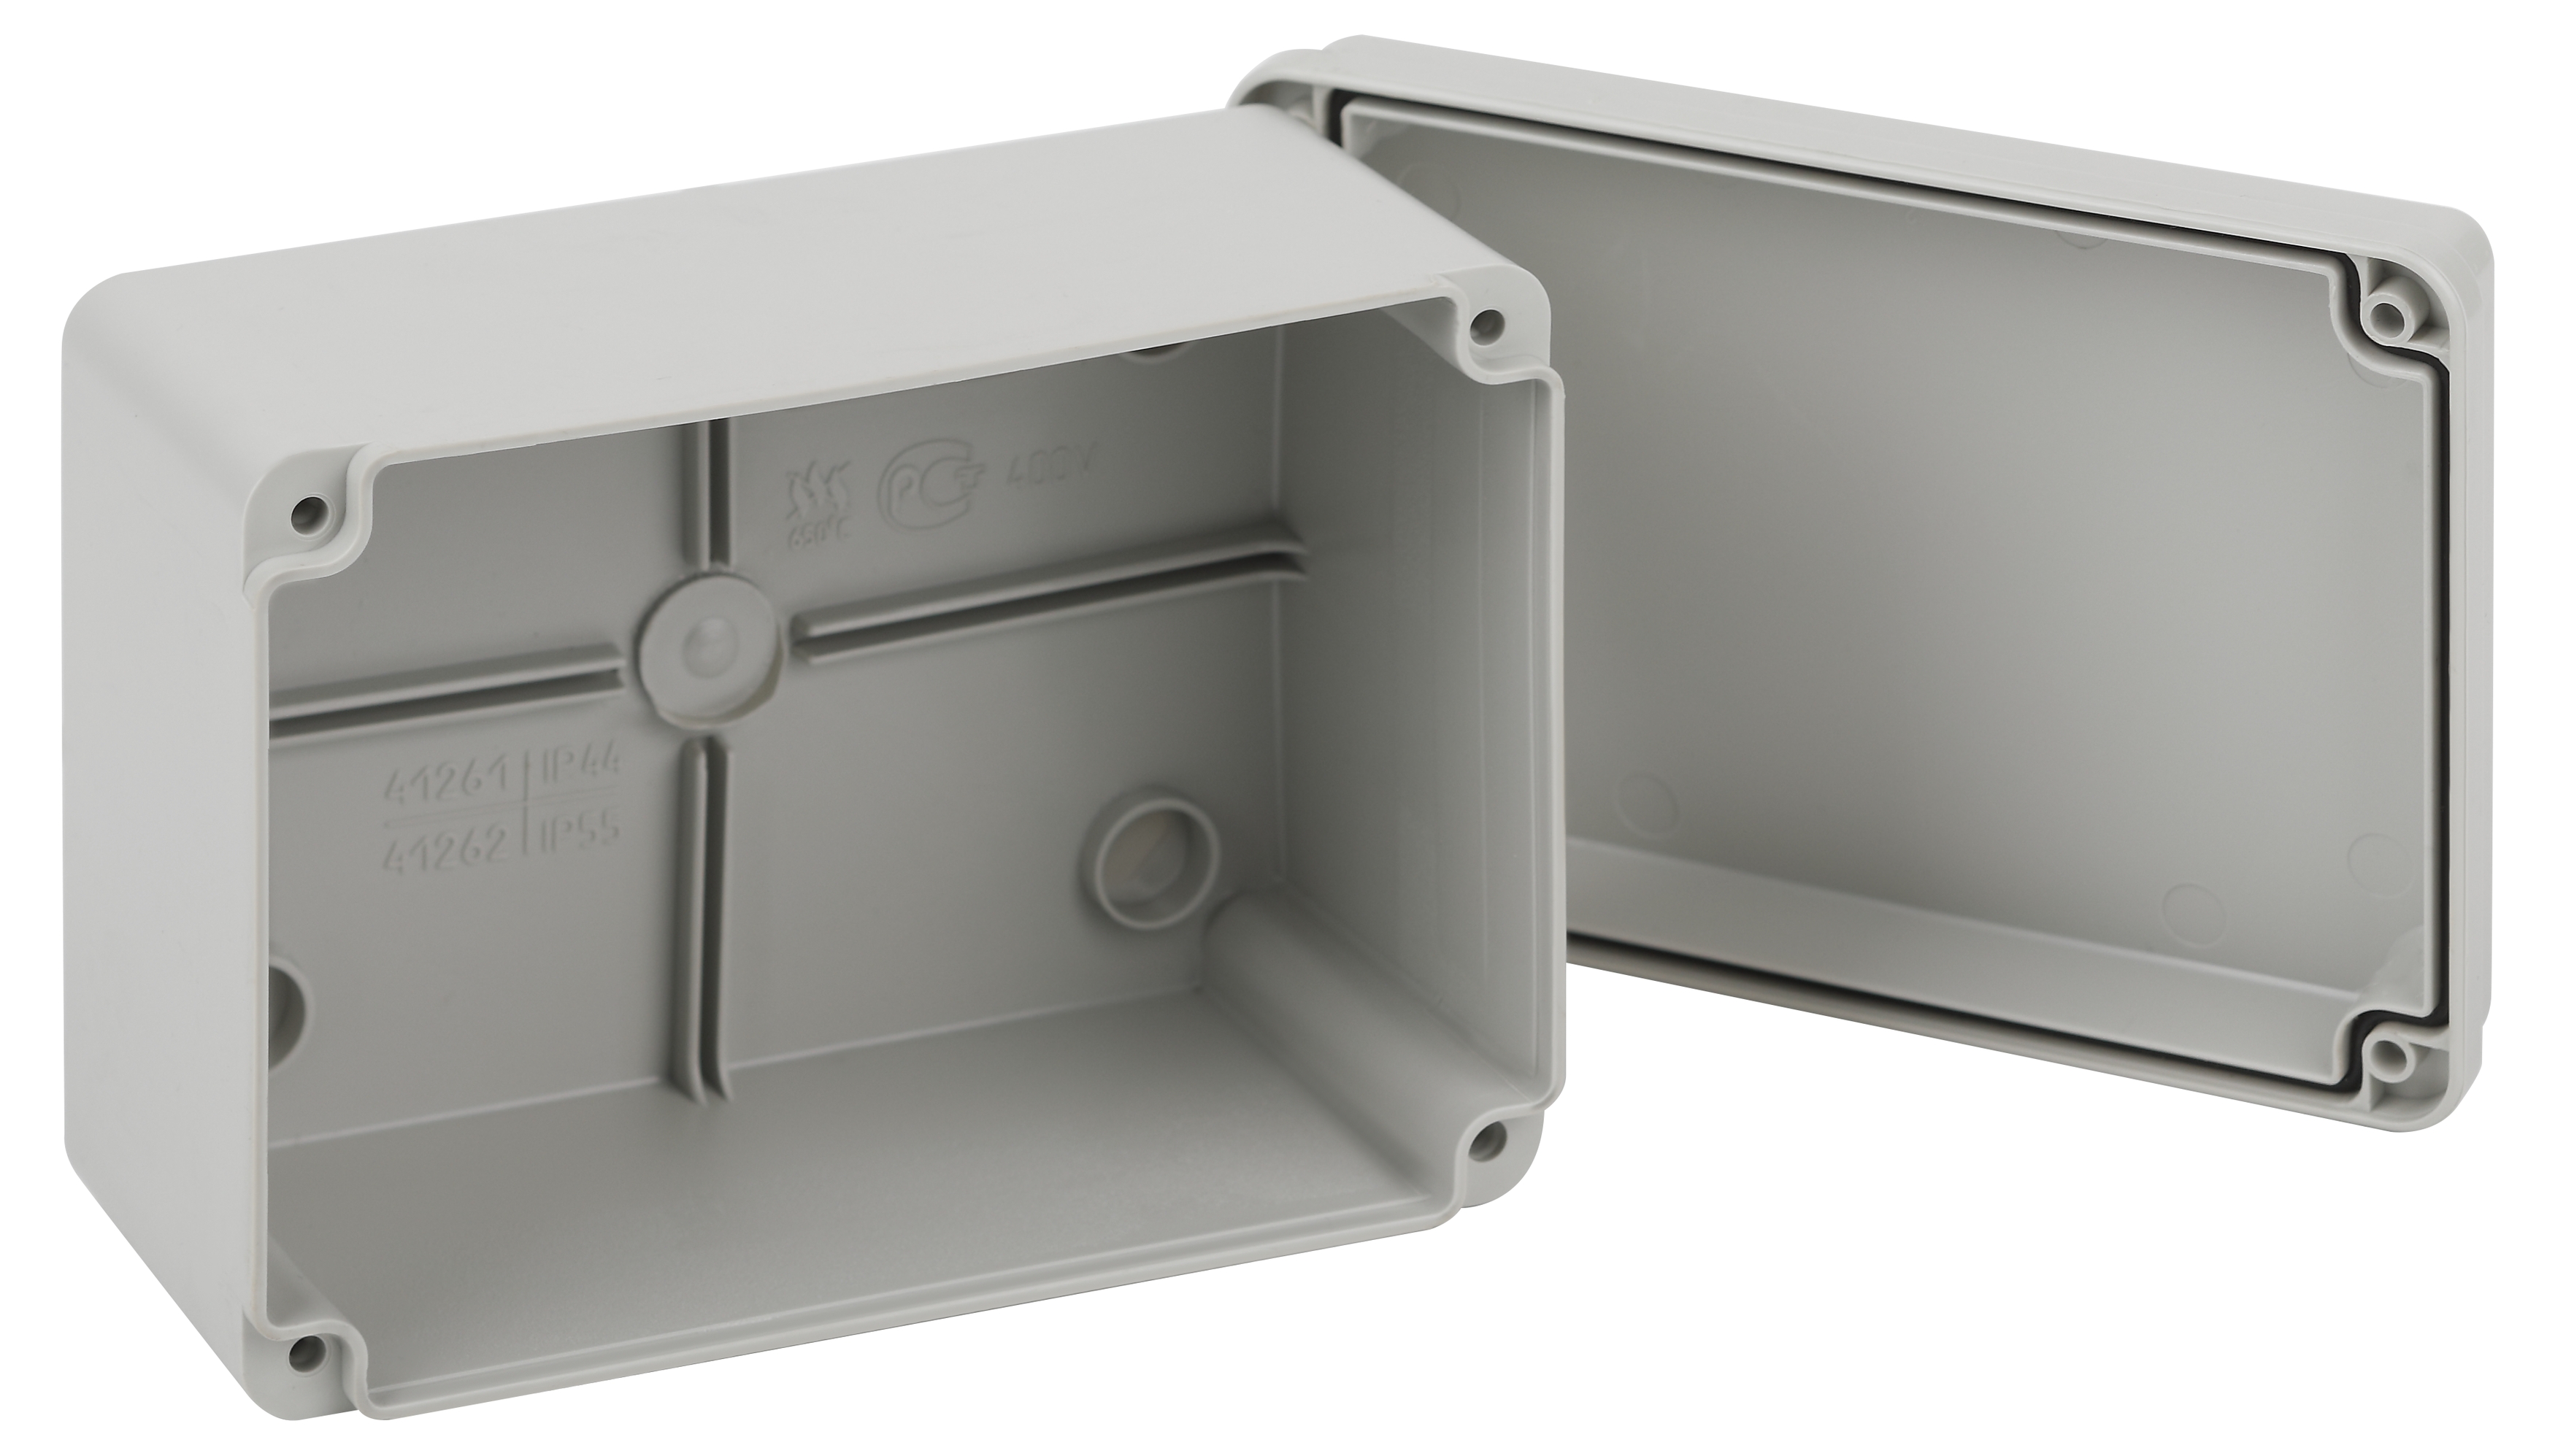 Распаячная коробка ЭРА KORvp приборная подъездная открытой установки 150х110х85мм на винтах с гладкими стенками IP55